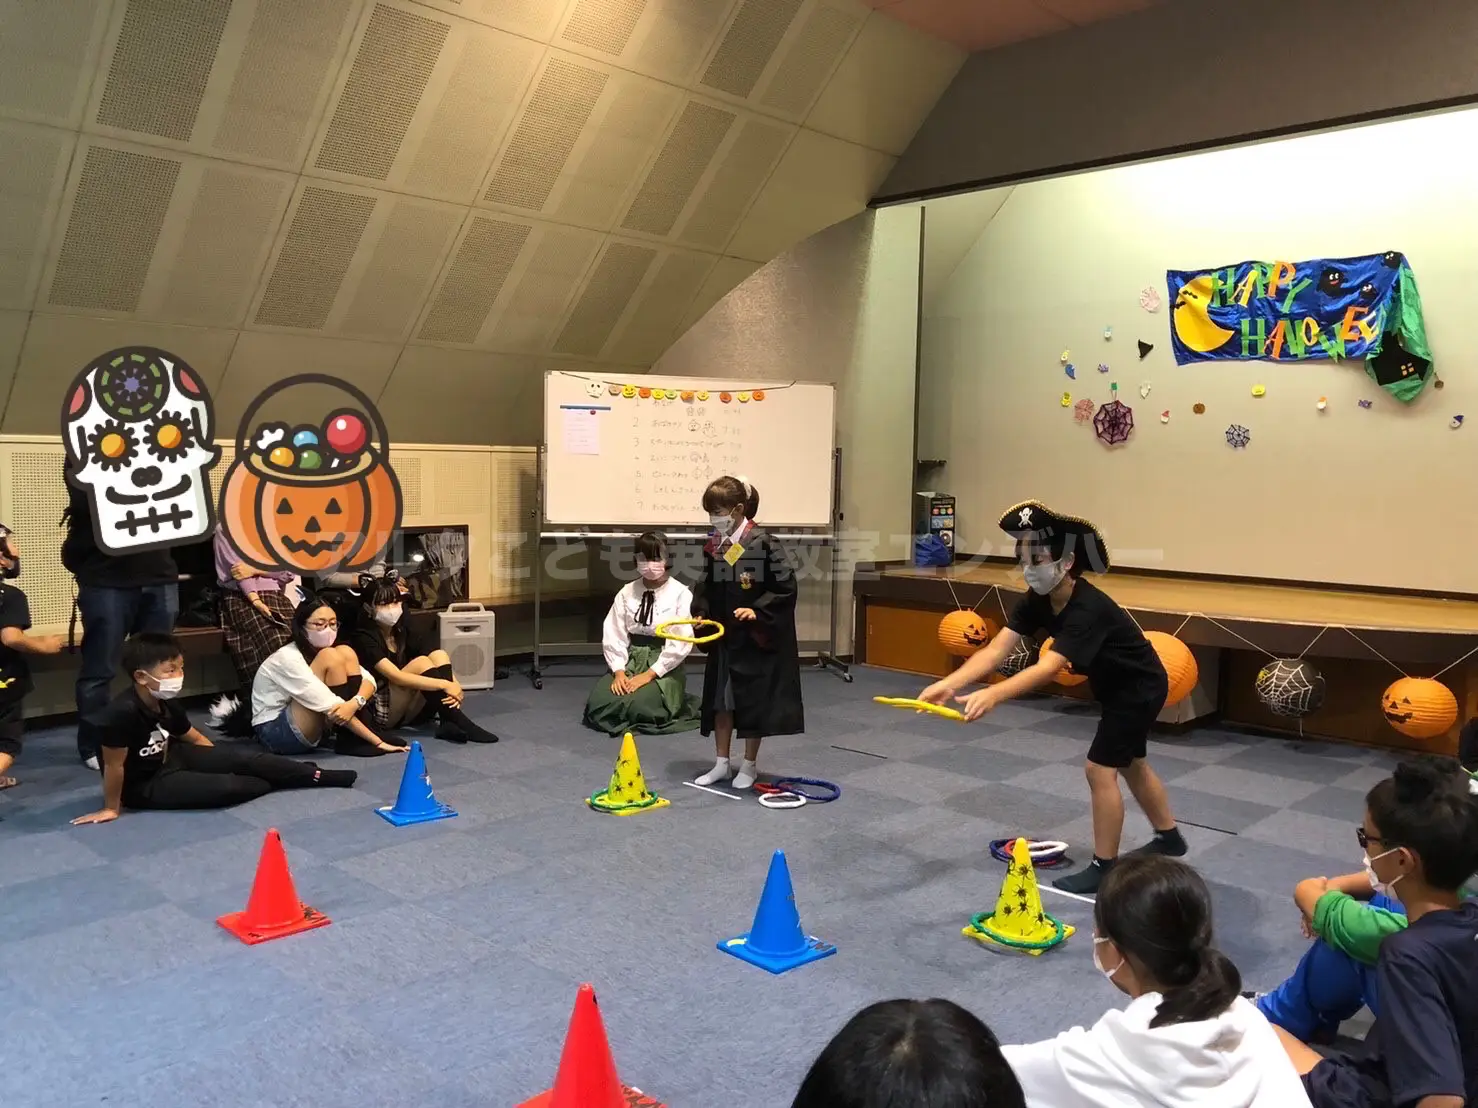 熊本市のこども英語教室エンデバー恒例ハロウィンパーティー。輪投げ